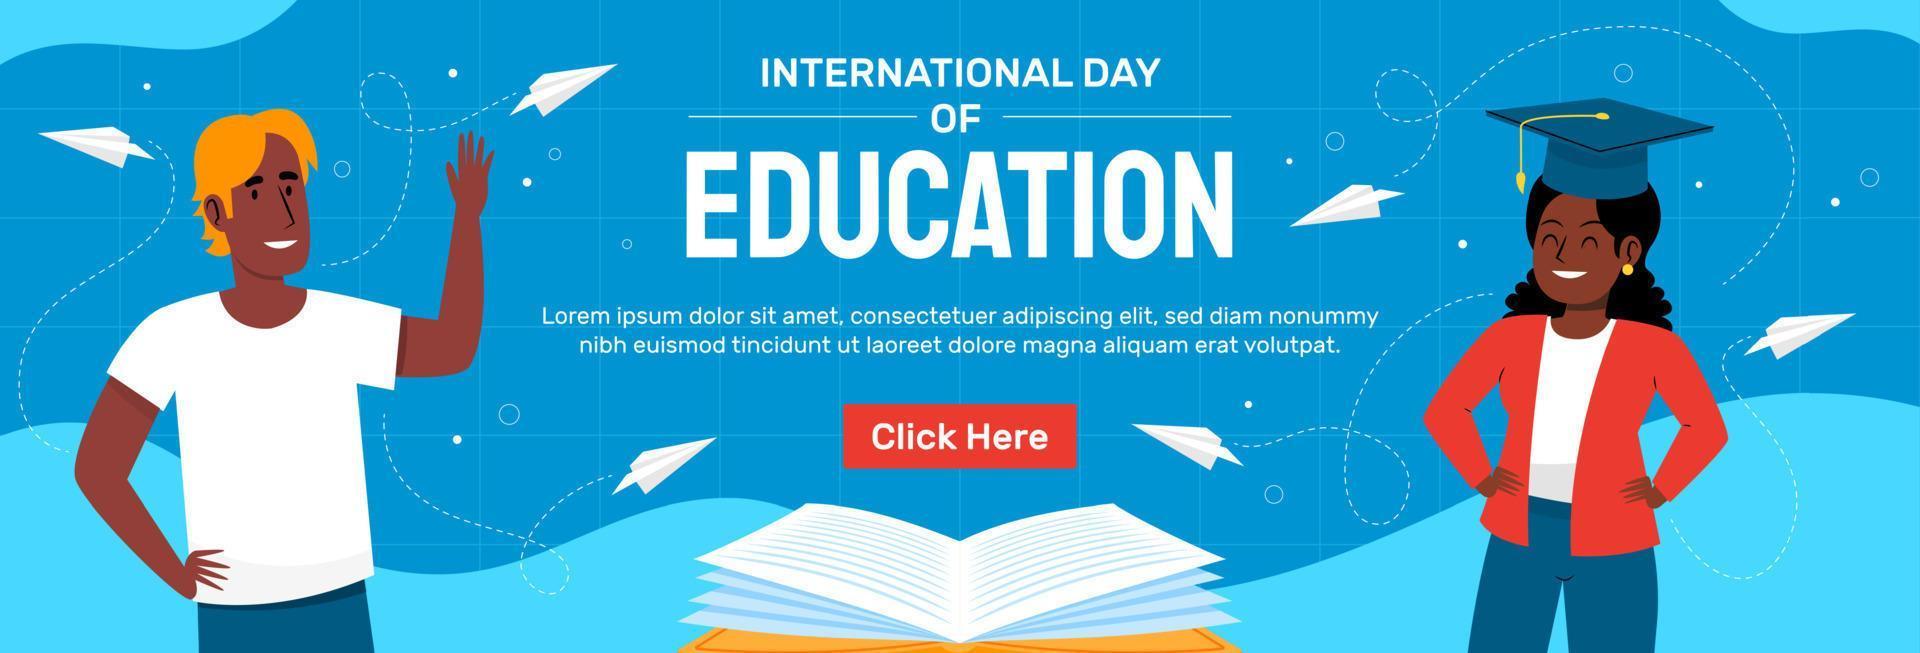 dia internacional educação 2023 modelo de banner vector design plano